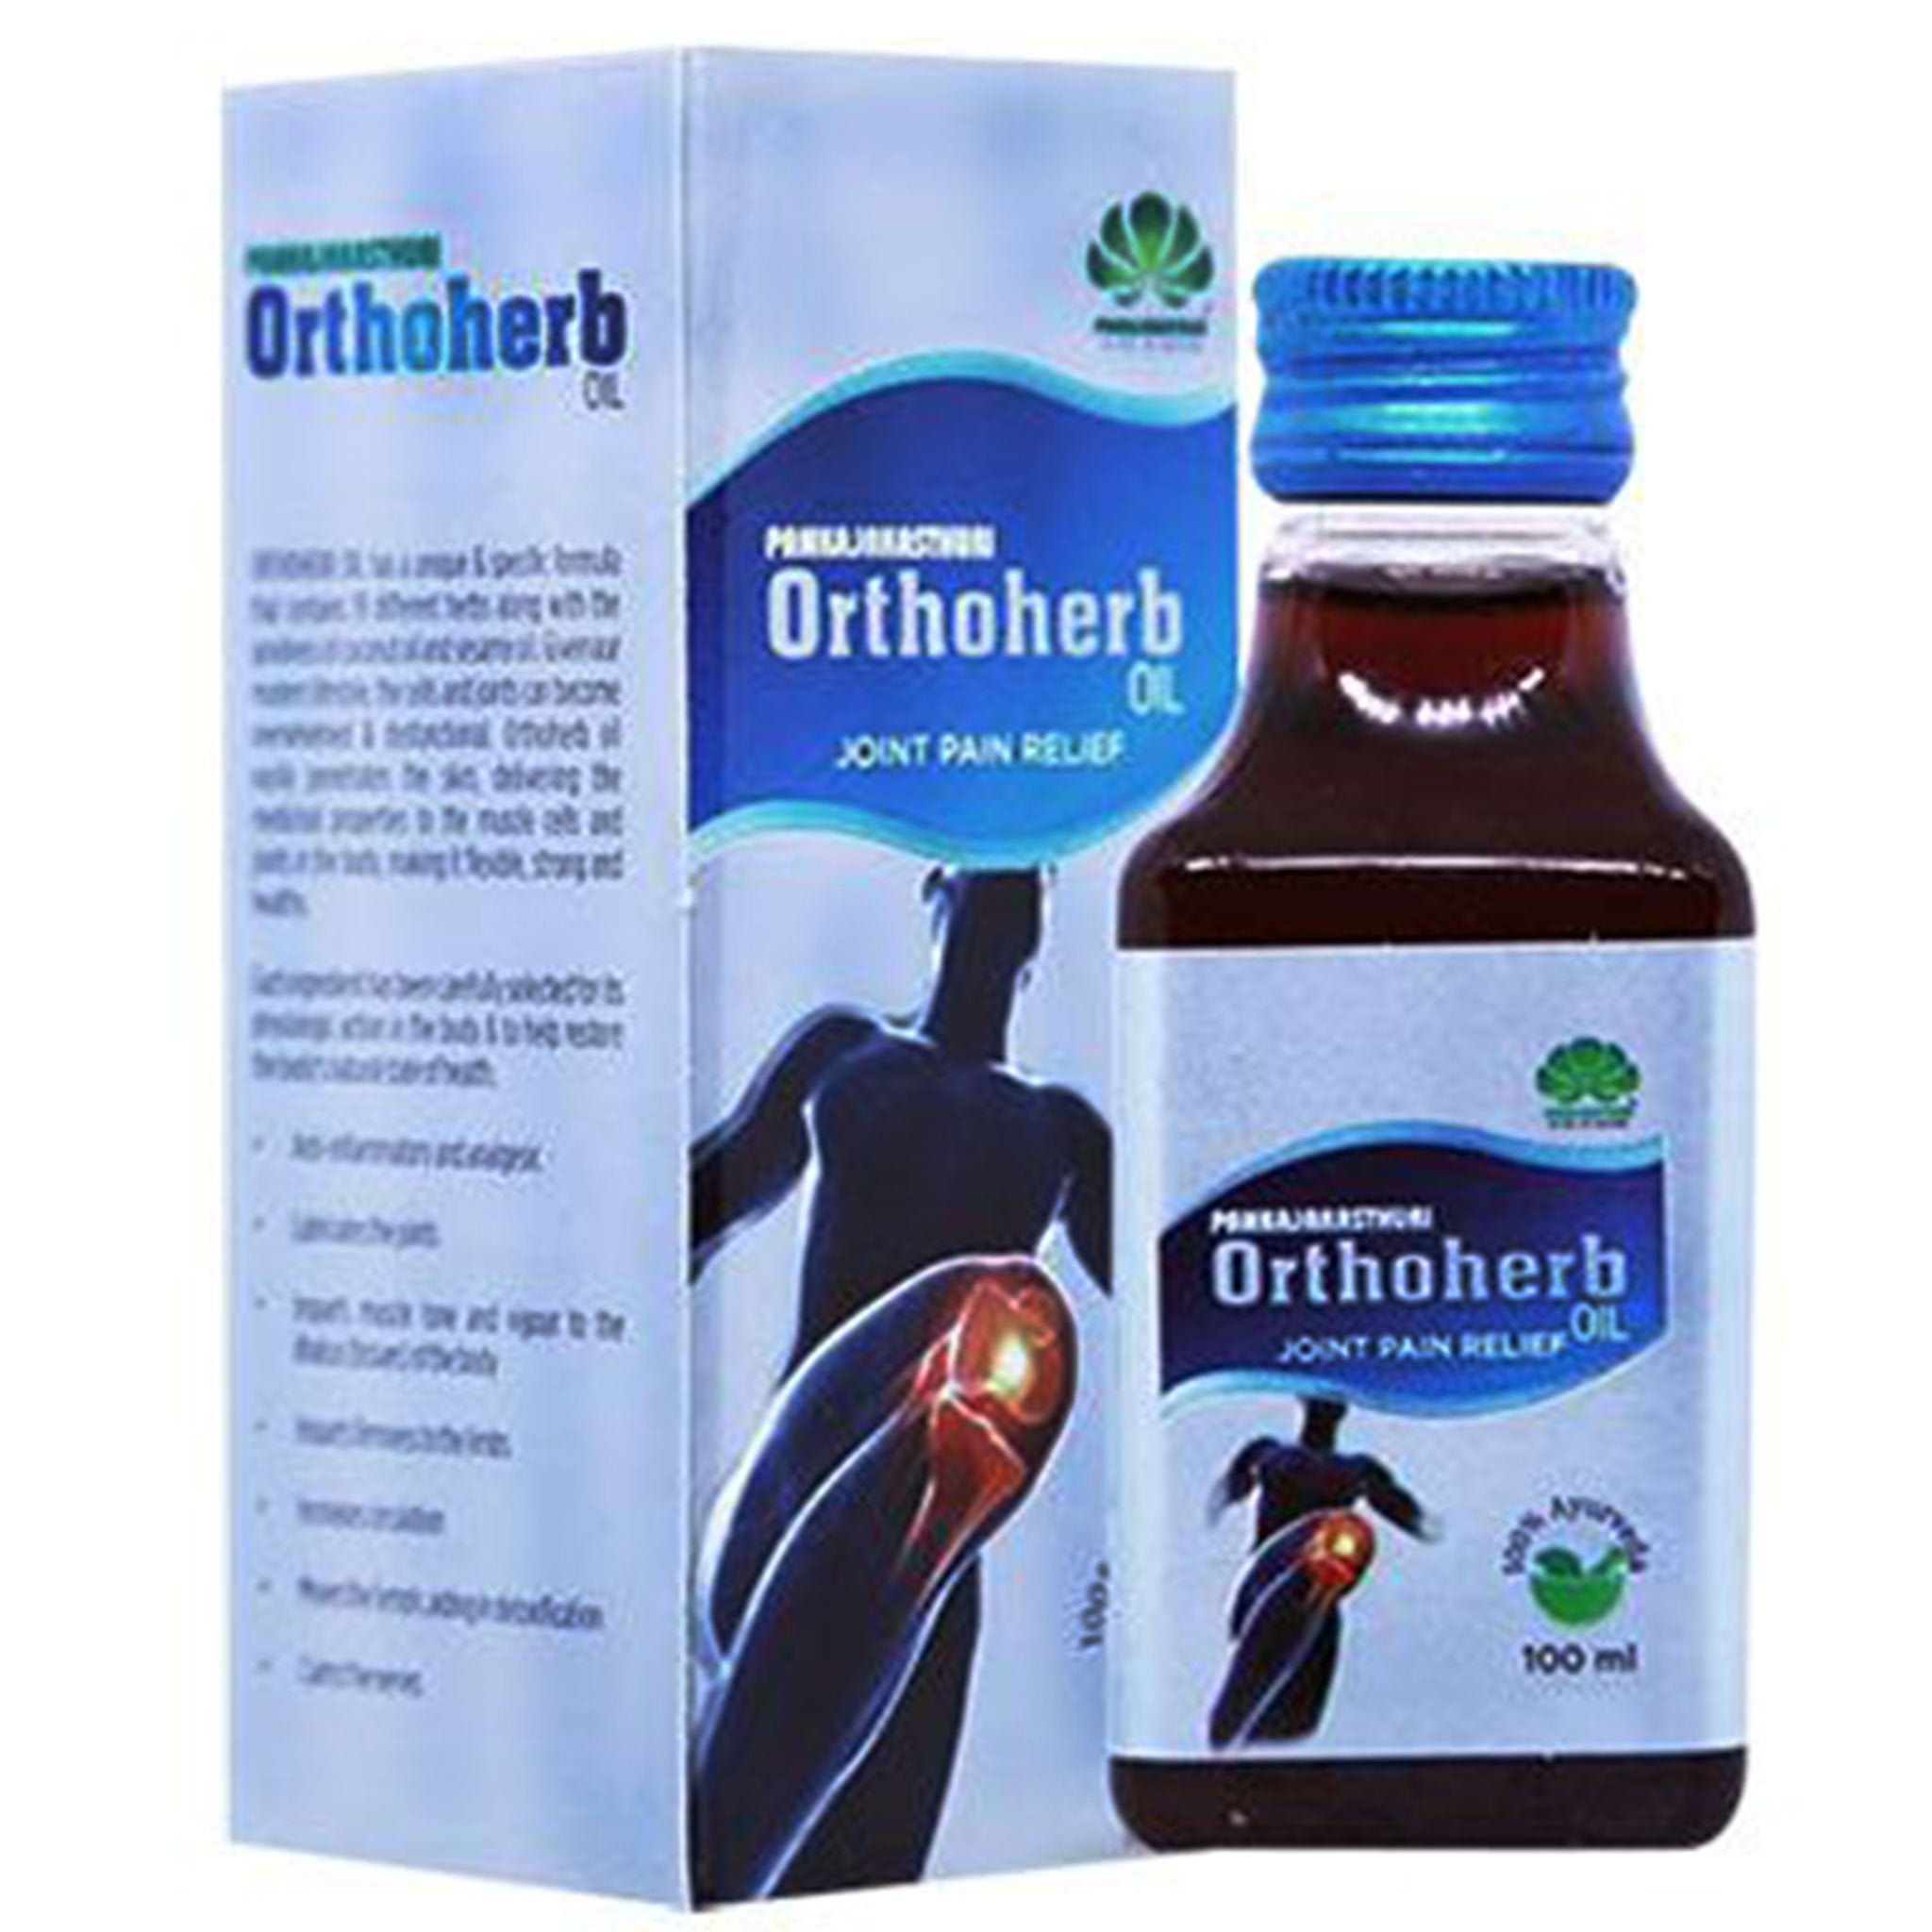 Pankajakasthuri Orthoherb Oil 100ml Value Pack of 3 